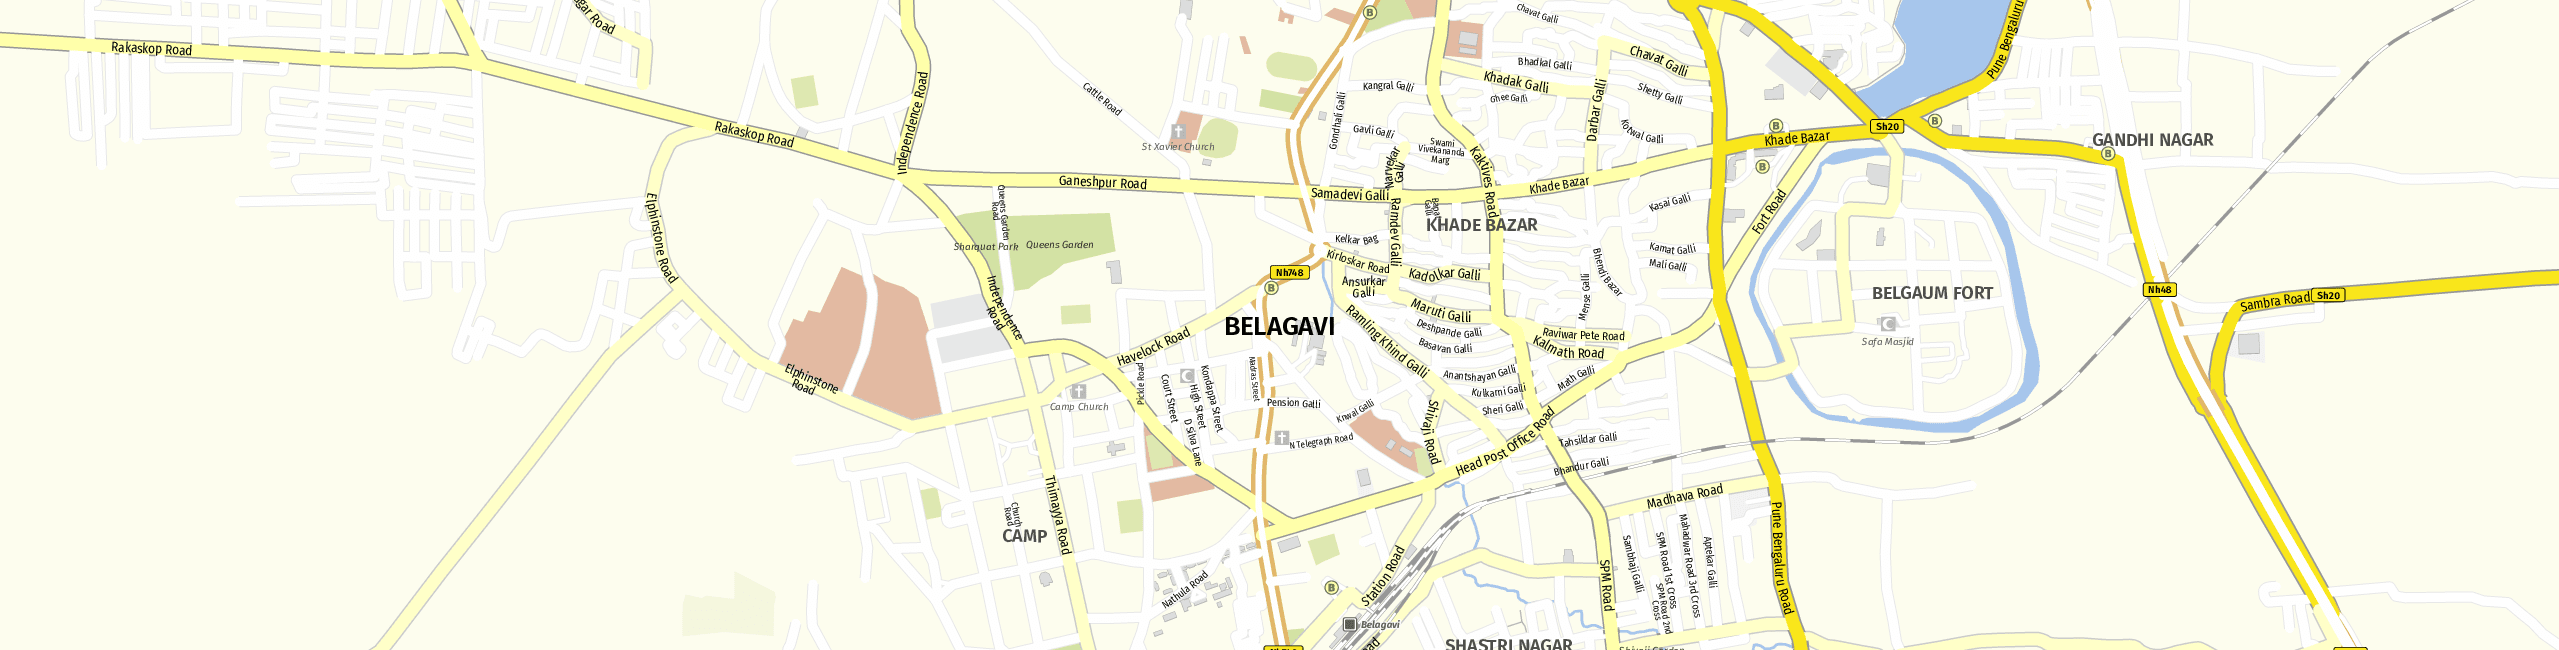 Stadtplan Belagavi zum Downloaden.